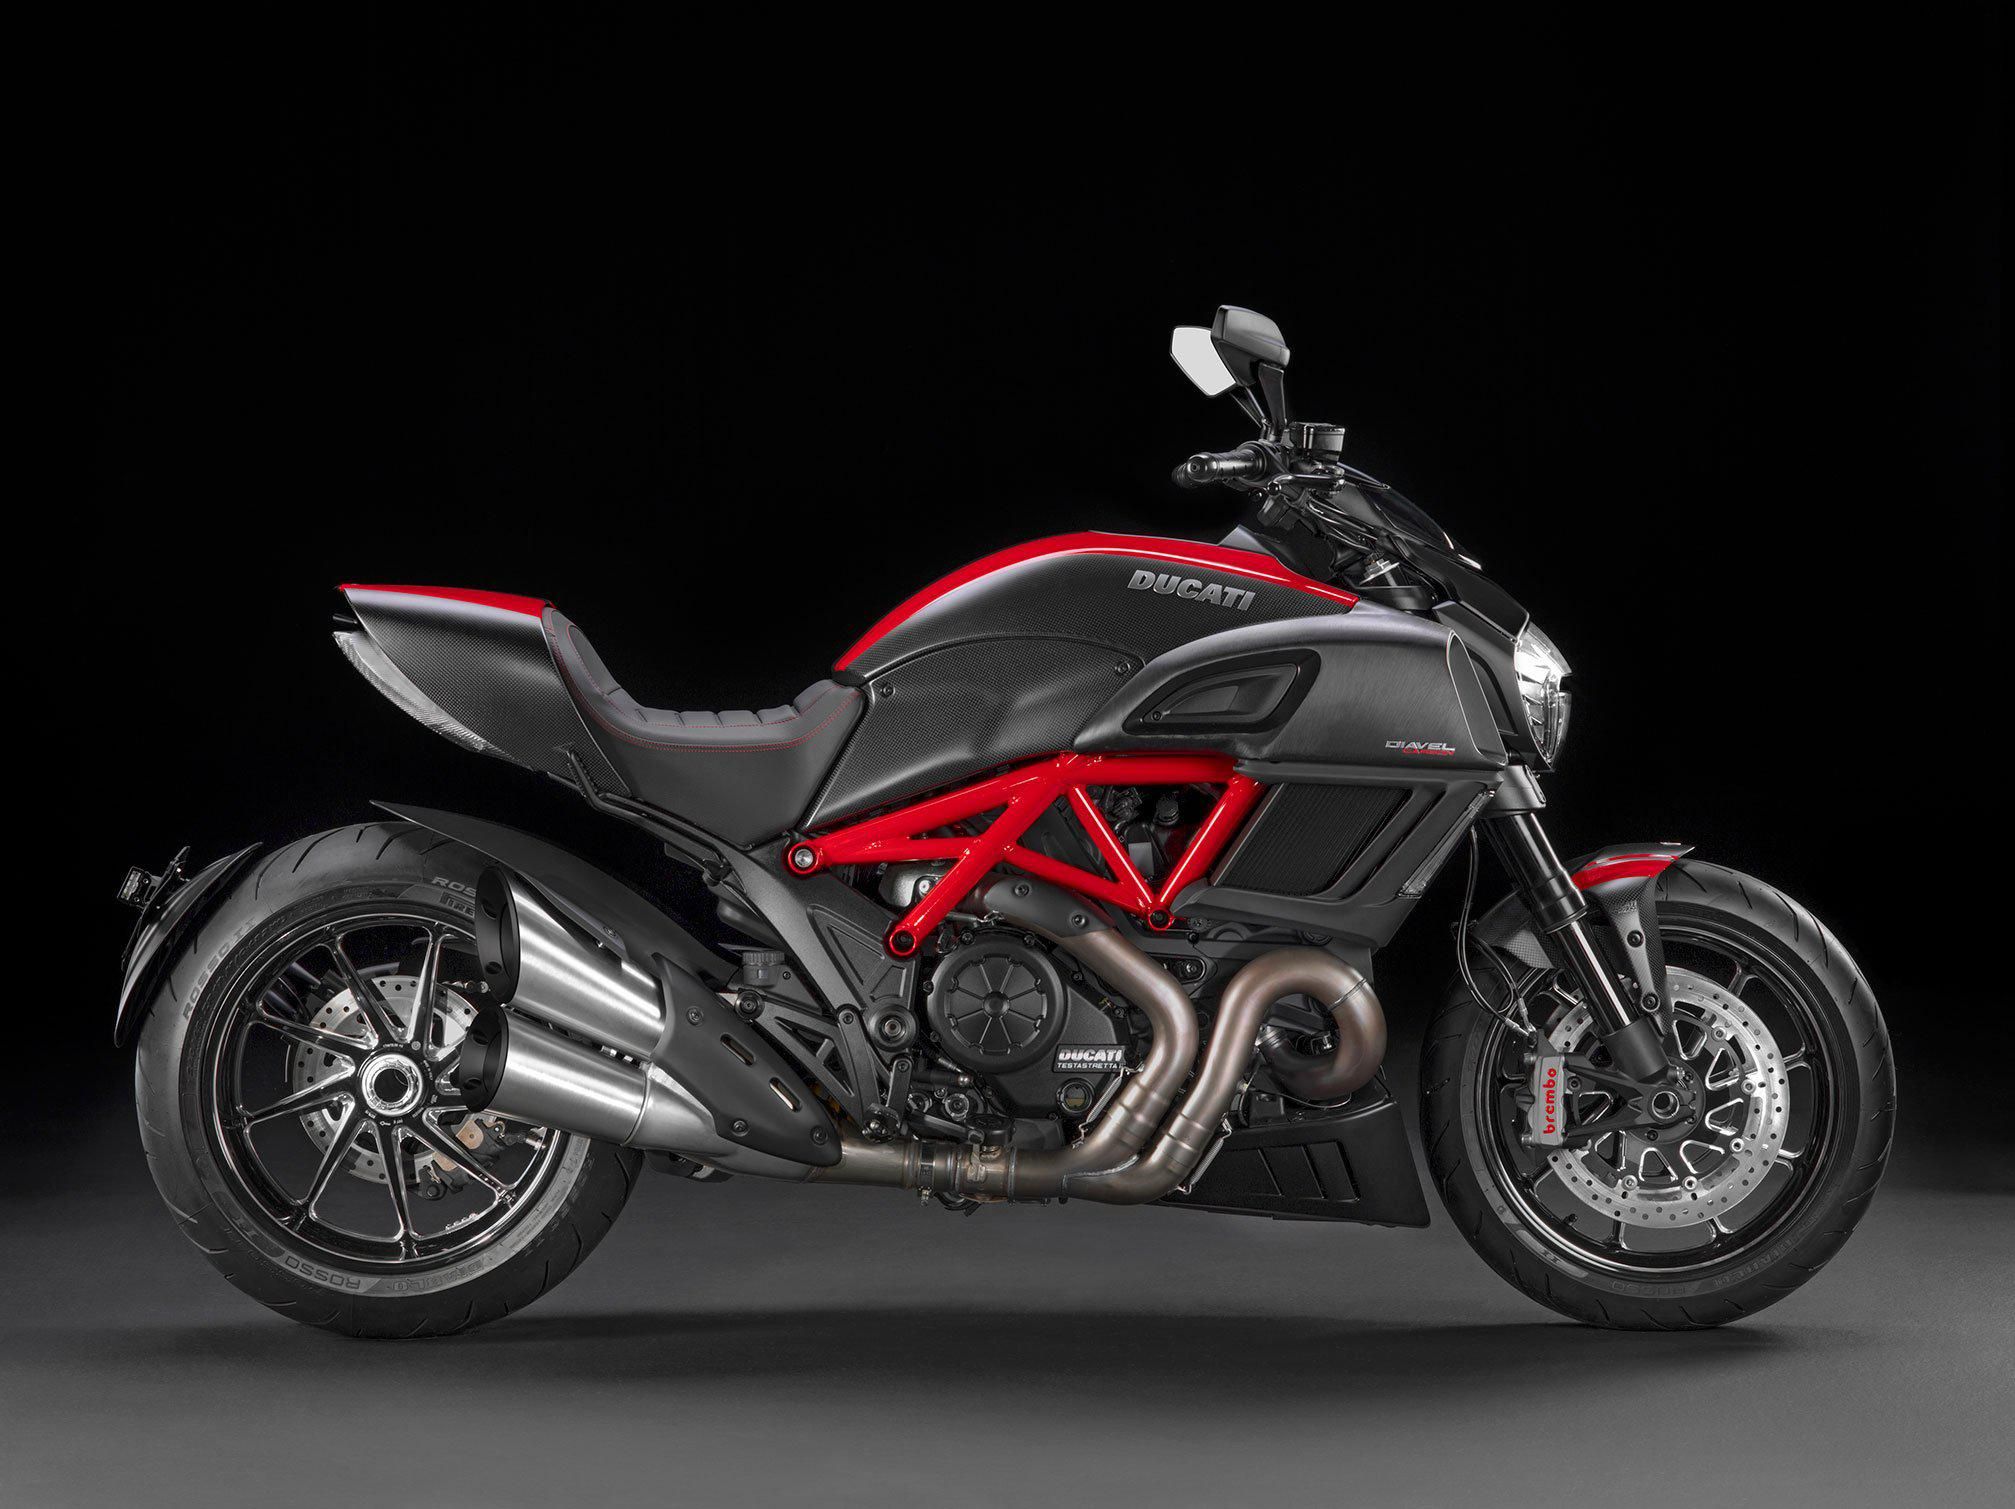 2015 Ducati Bike HD Wallpaper, 2015 Ducati Bike Images, New Wallpapers